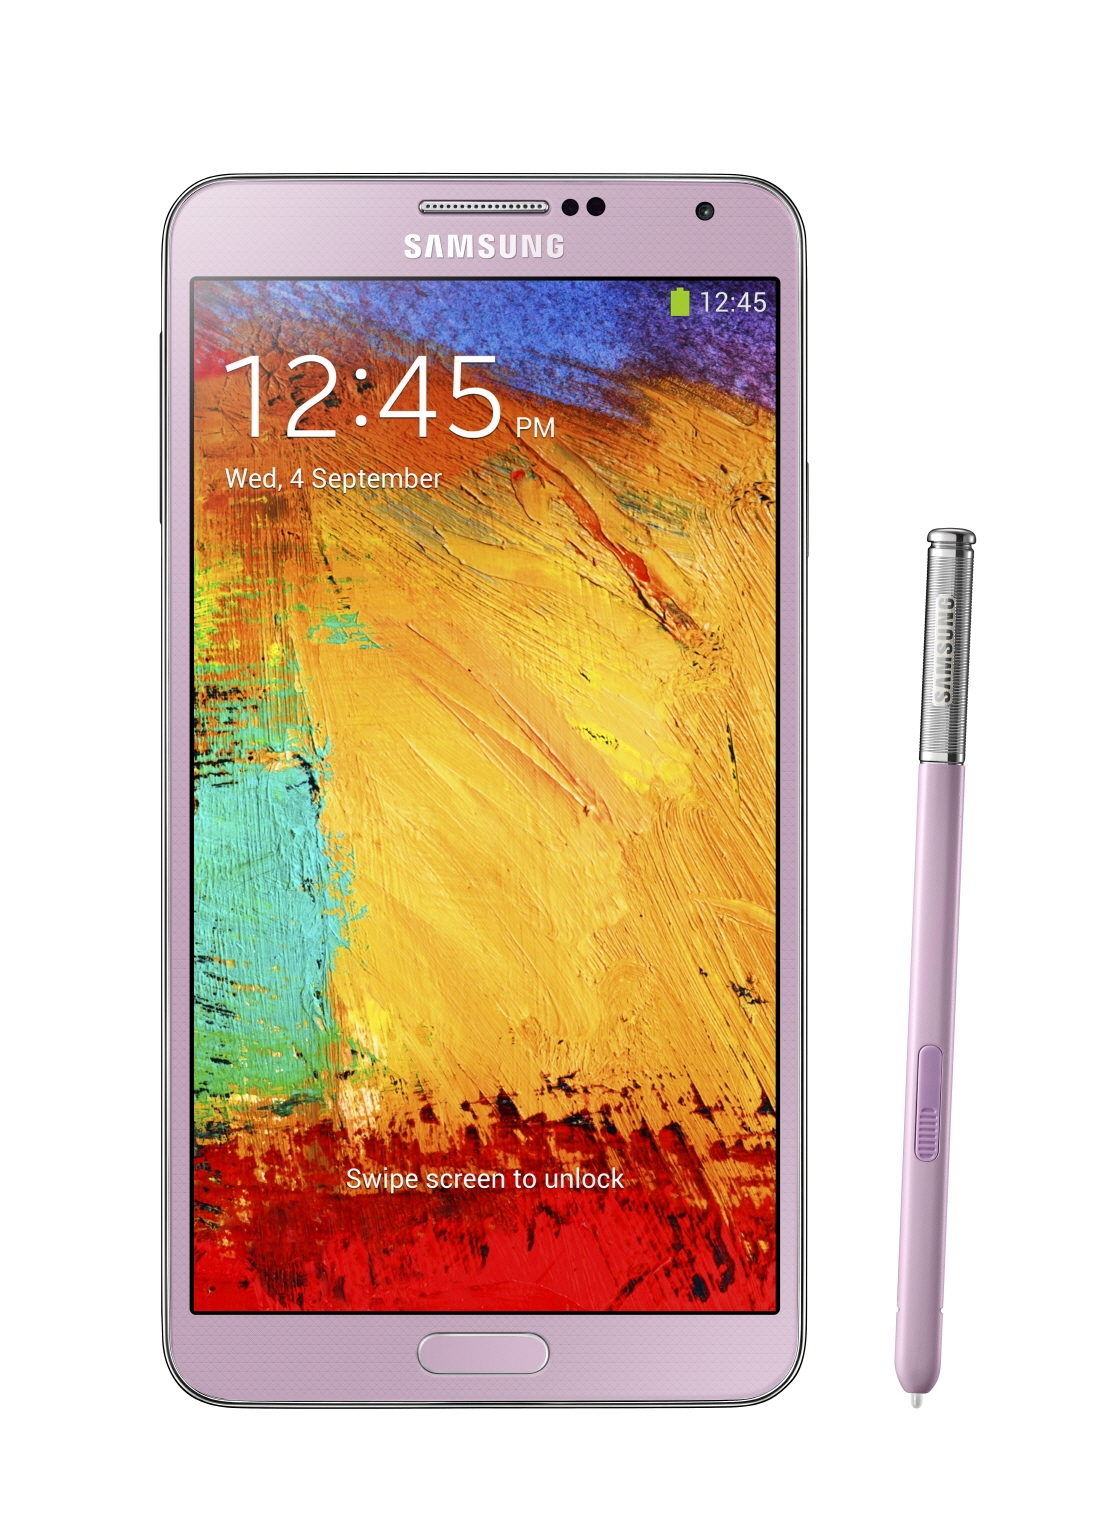 Внешний вид Samsung Galaxy Note III - розовый